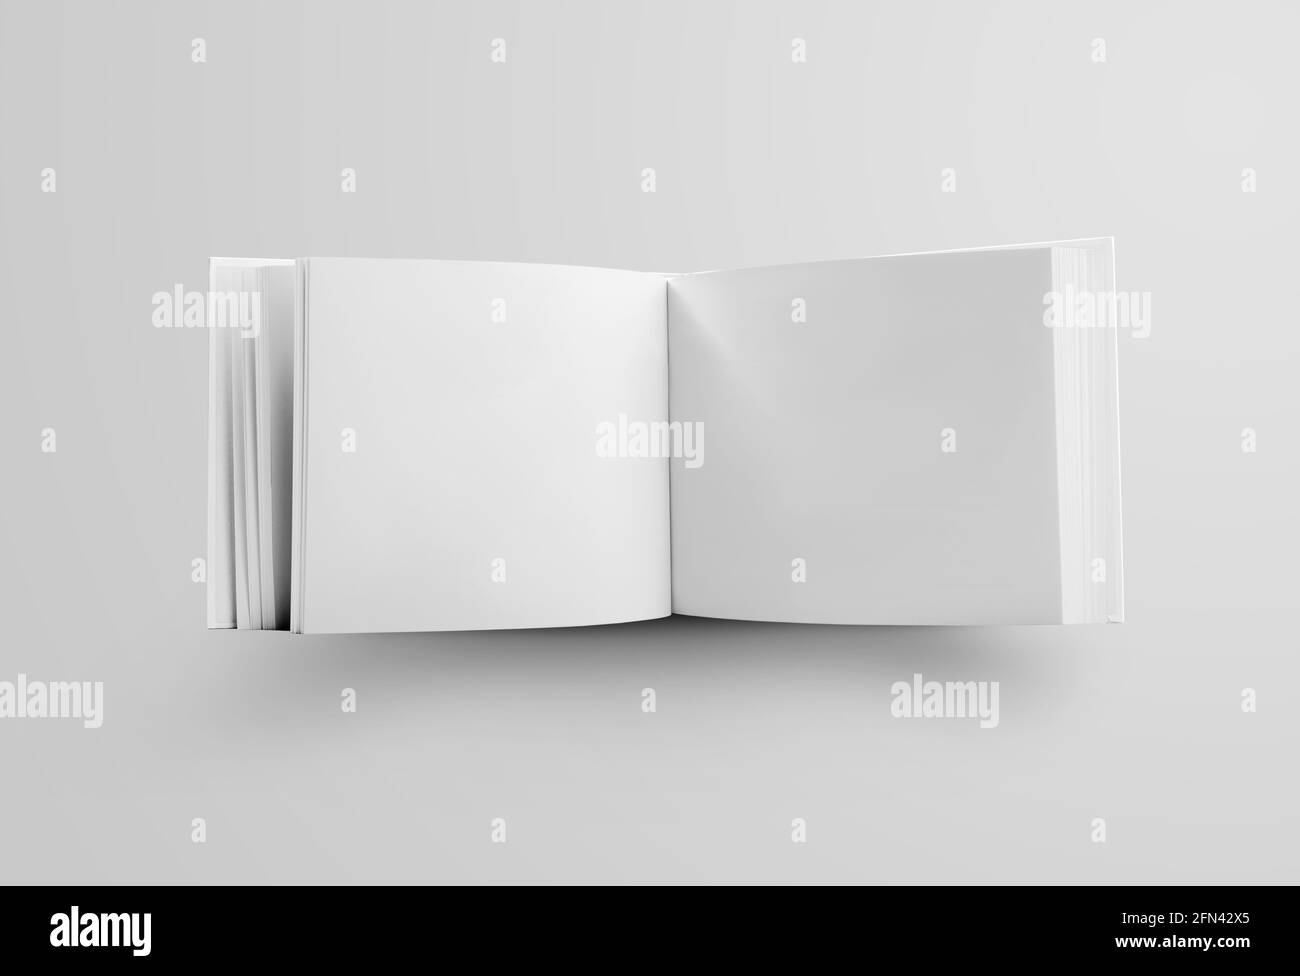 Vorlage eines weißen Buches Landschaftsausrichtung, stehend und offen in der Mitte, ein Standardobjekt für die Präsentation von Design und Muster. Modell Stockfoto